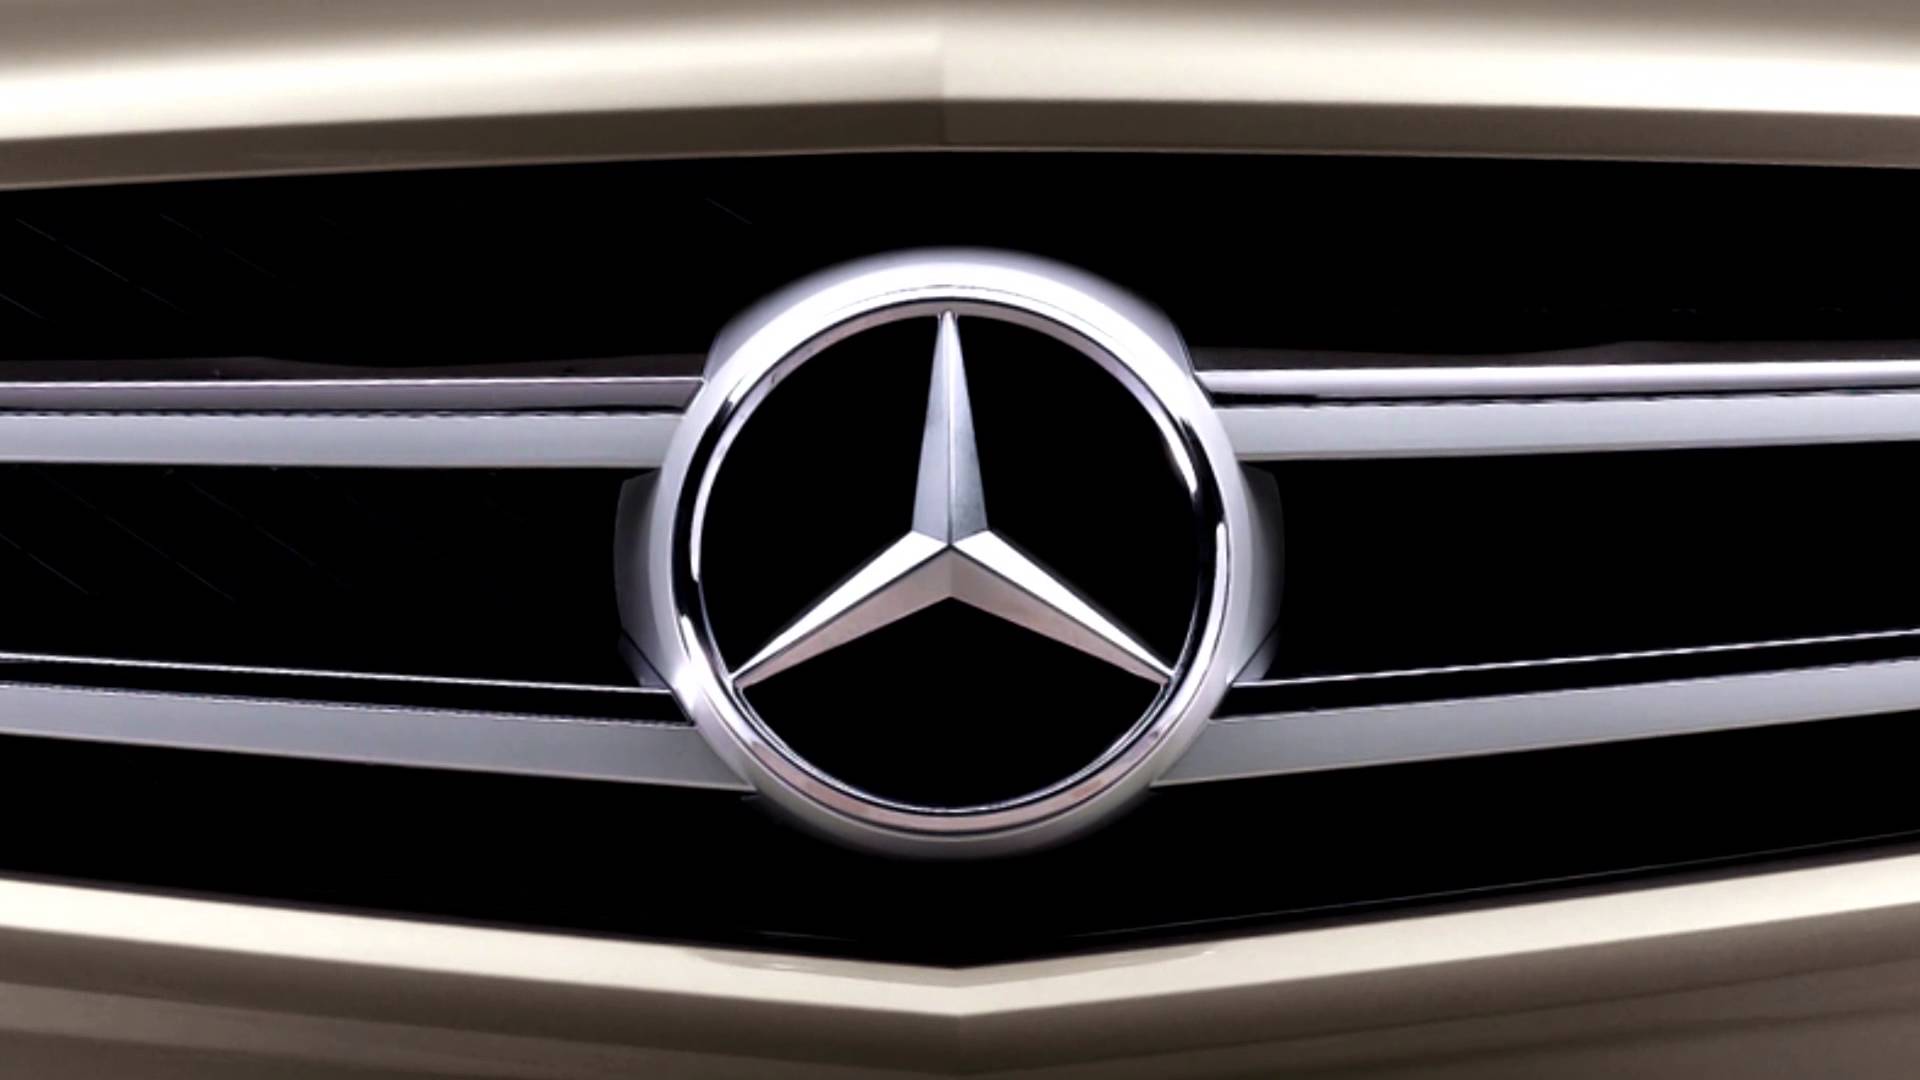 Mercedes Benz Car Hd Wallpapers 1080p